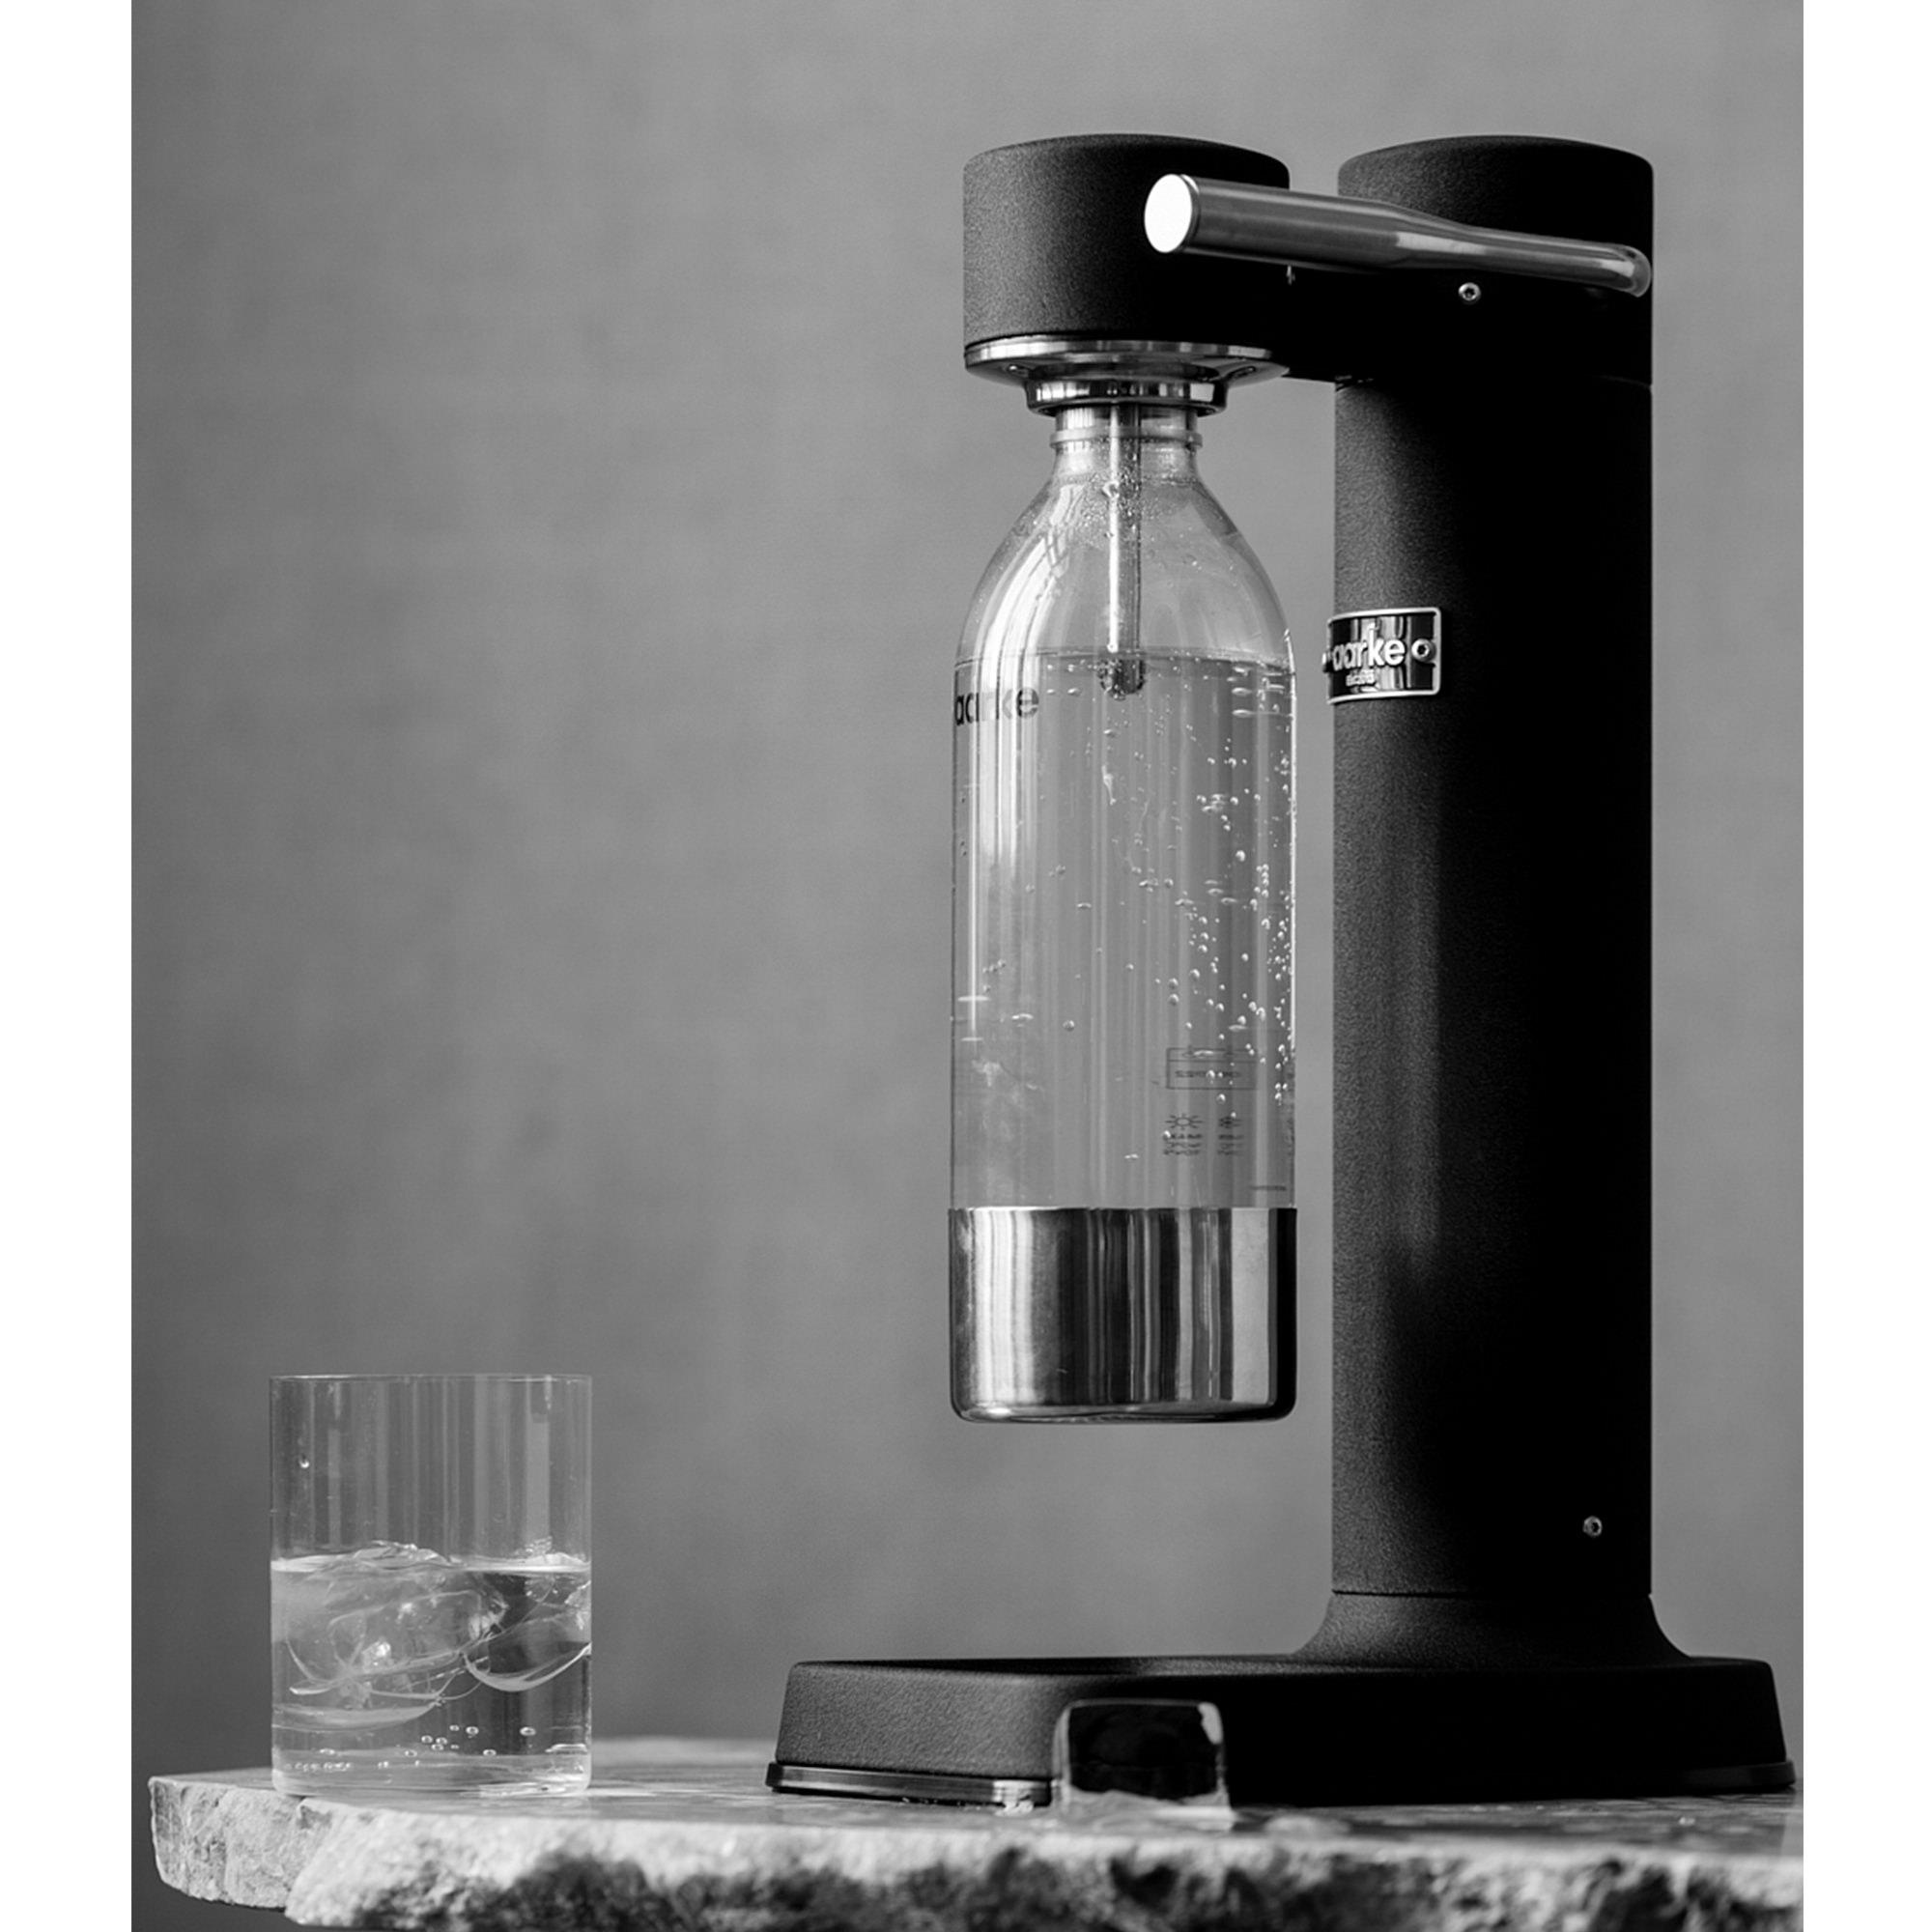 Aarke Carbonator 3 Sparkling Water Maker Black Image 4